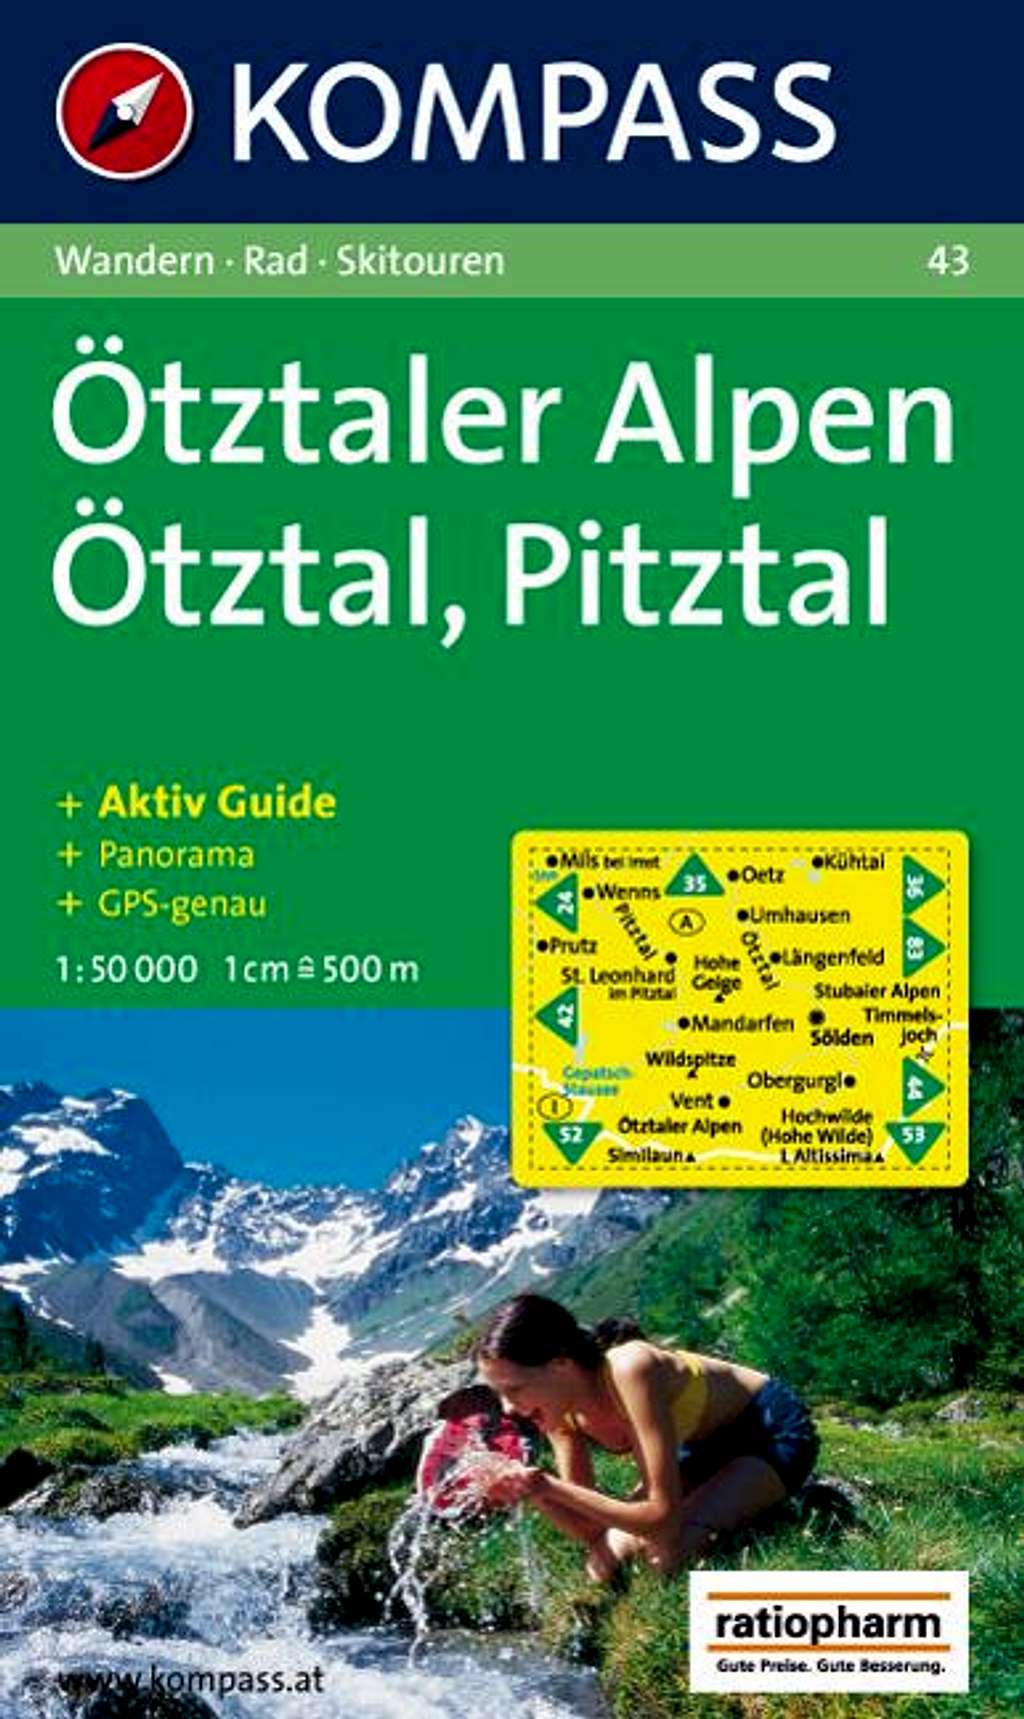 Kompass Map no. 43 Otztaler Alpen